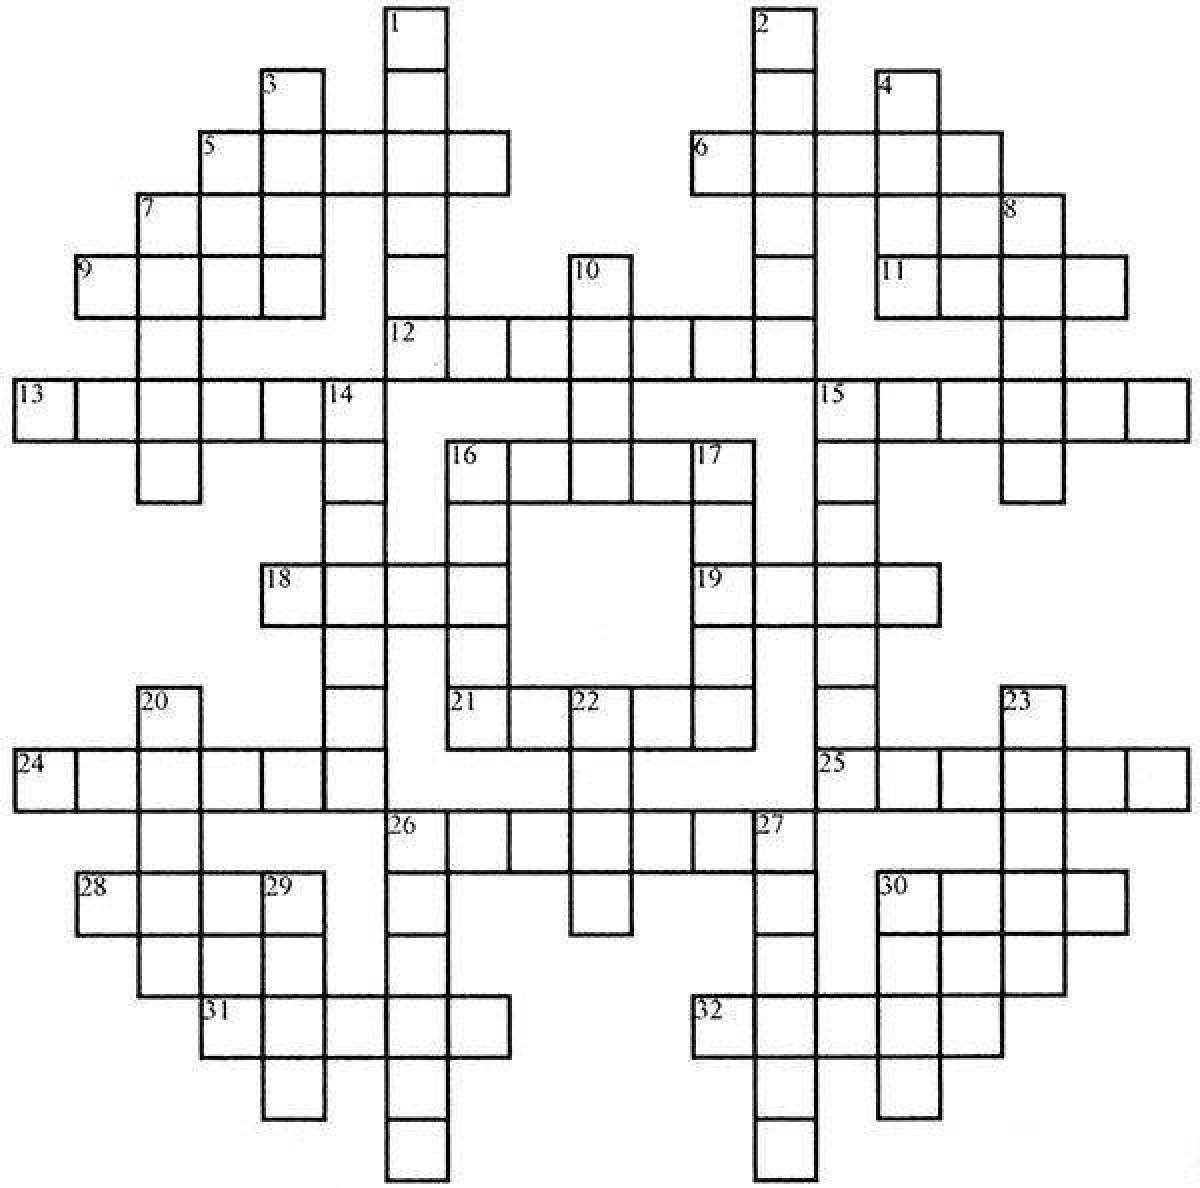 Creative handmade ceramic tile crossword puzzle